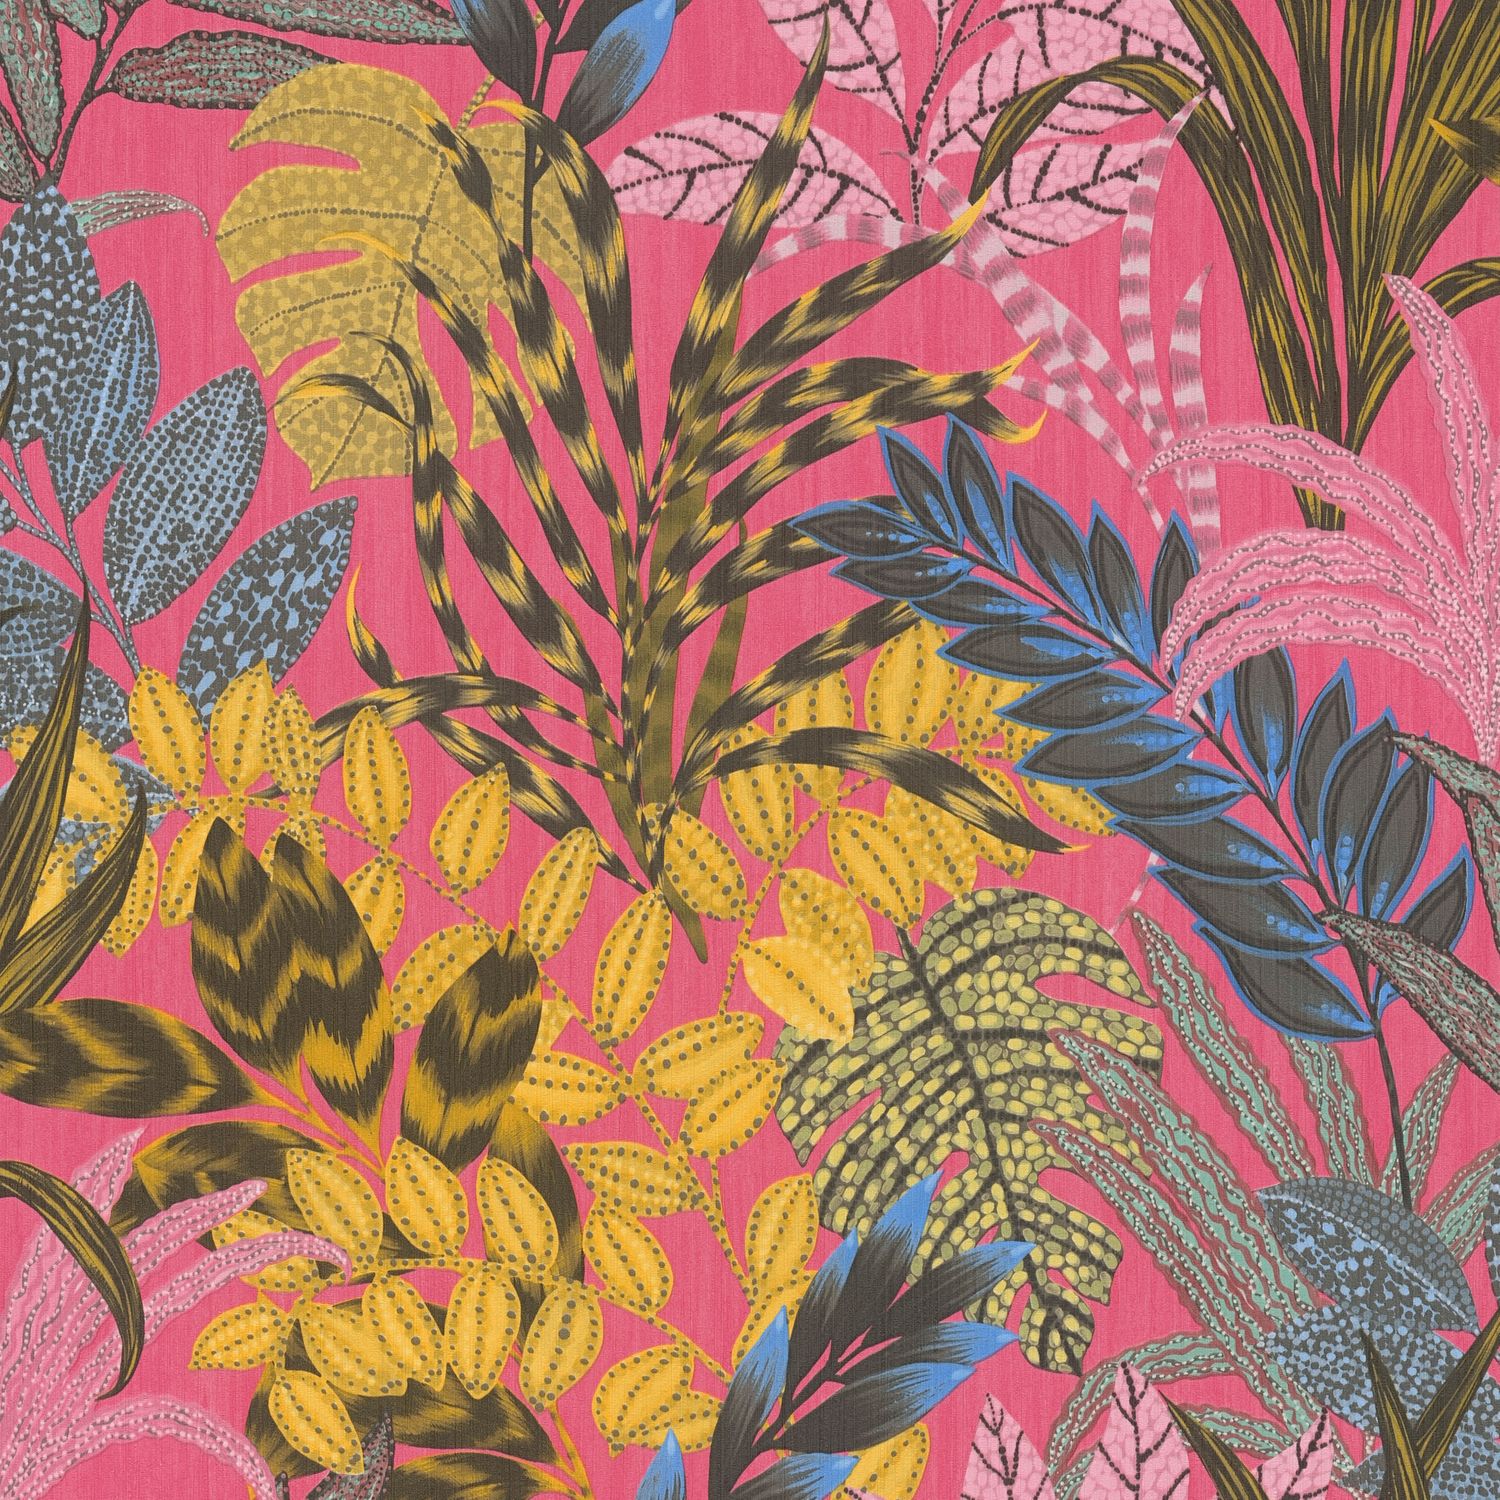 Papier peint floral Profhome 378602-GU papier peint intissé légèrement texturé avec un dessin exotique mat rose rose-vif jaune bleu 5,33 m2